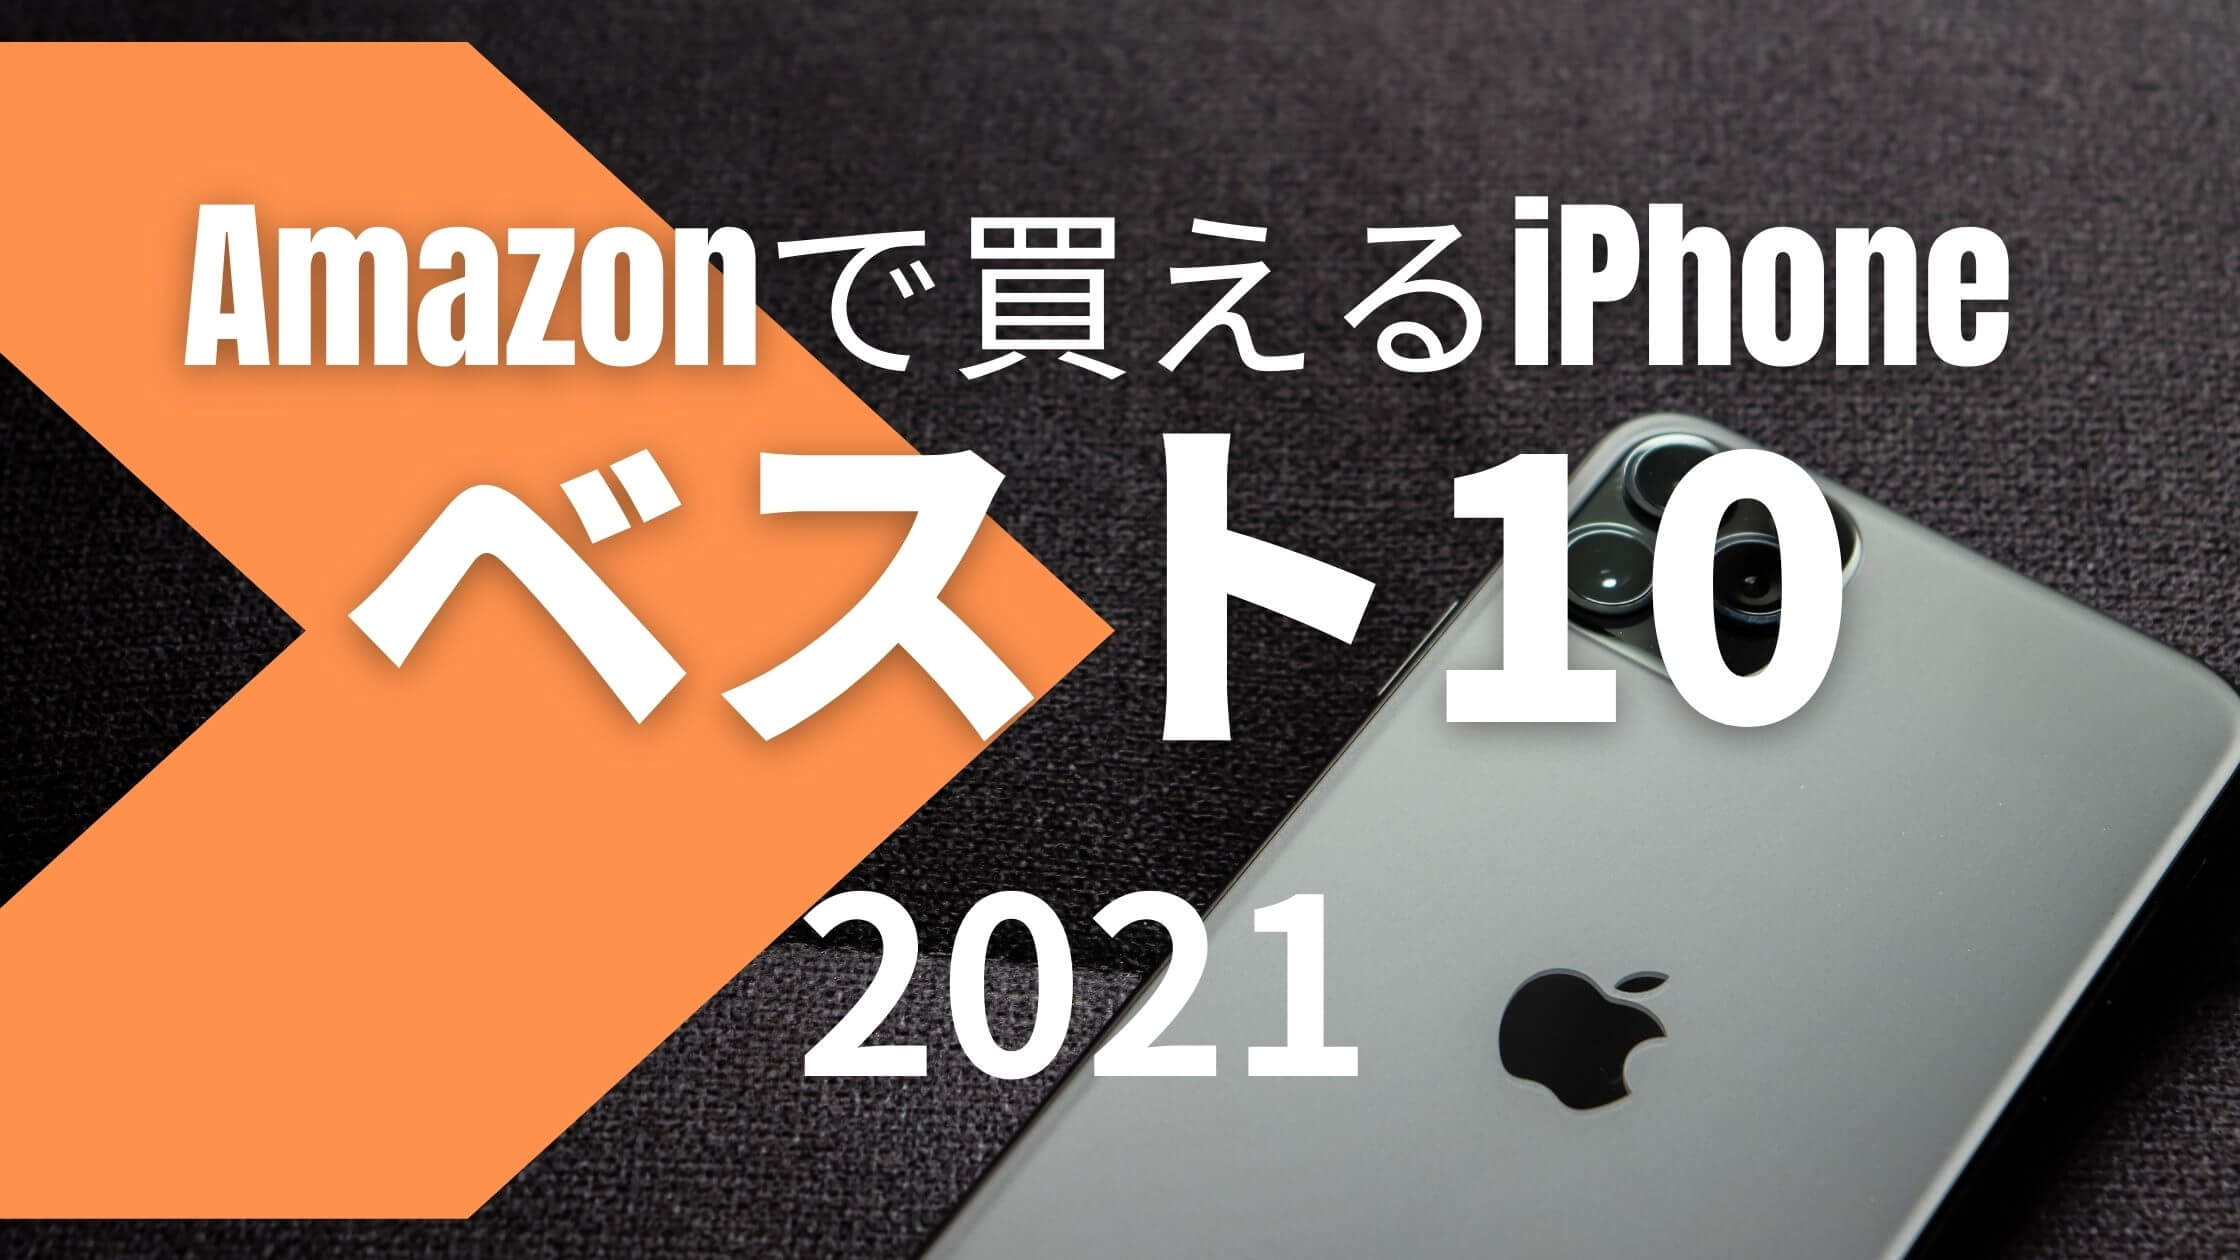 2021-iphone-amazon